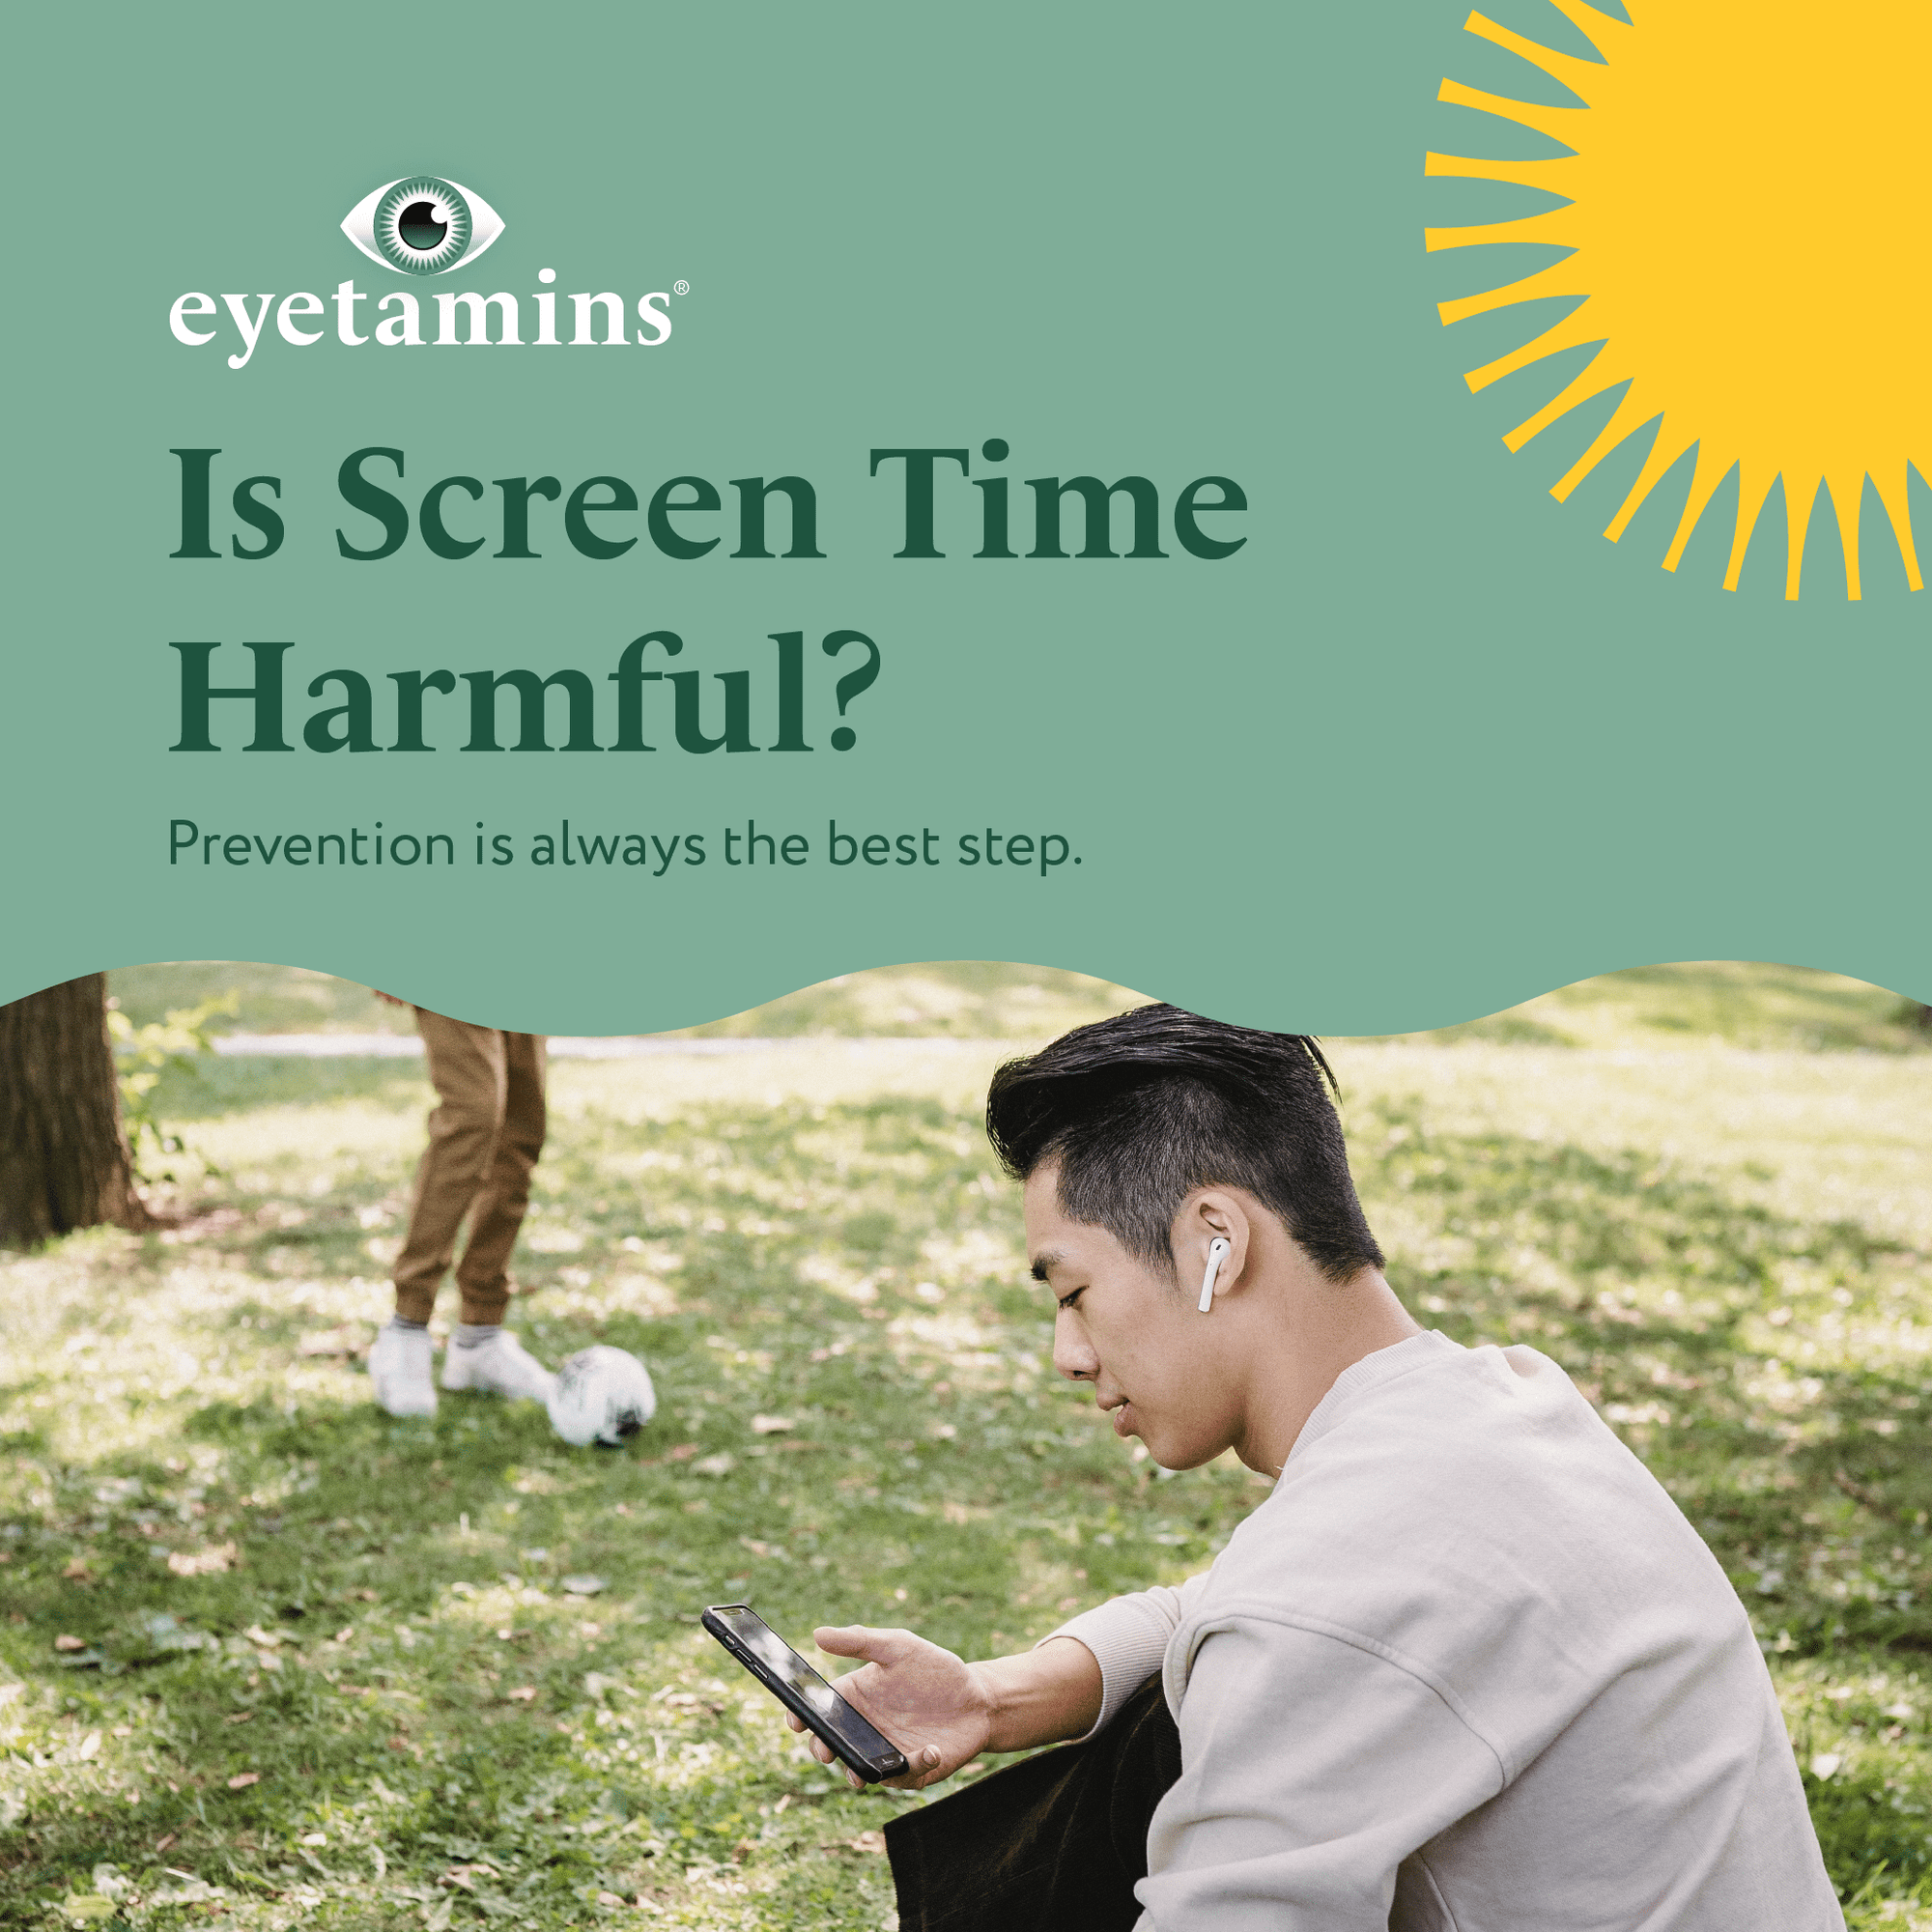 Eyetamins - Is Screen Time Harmful?